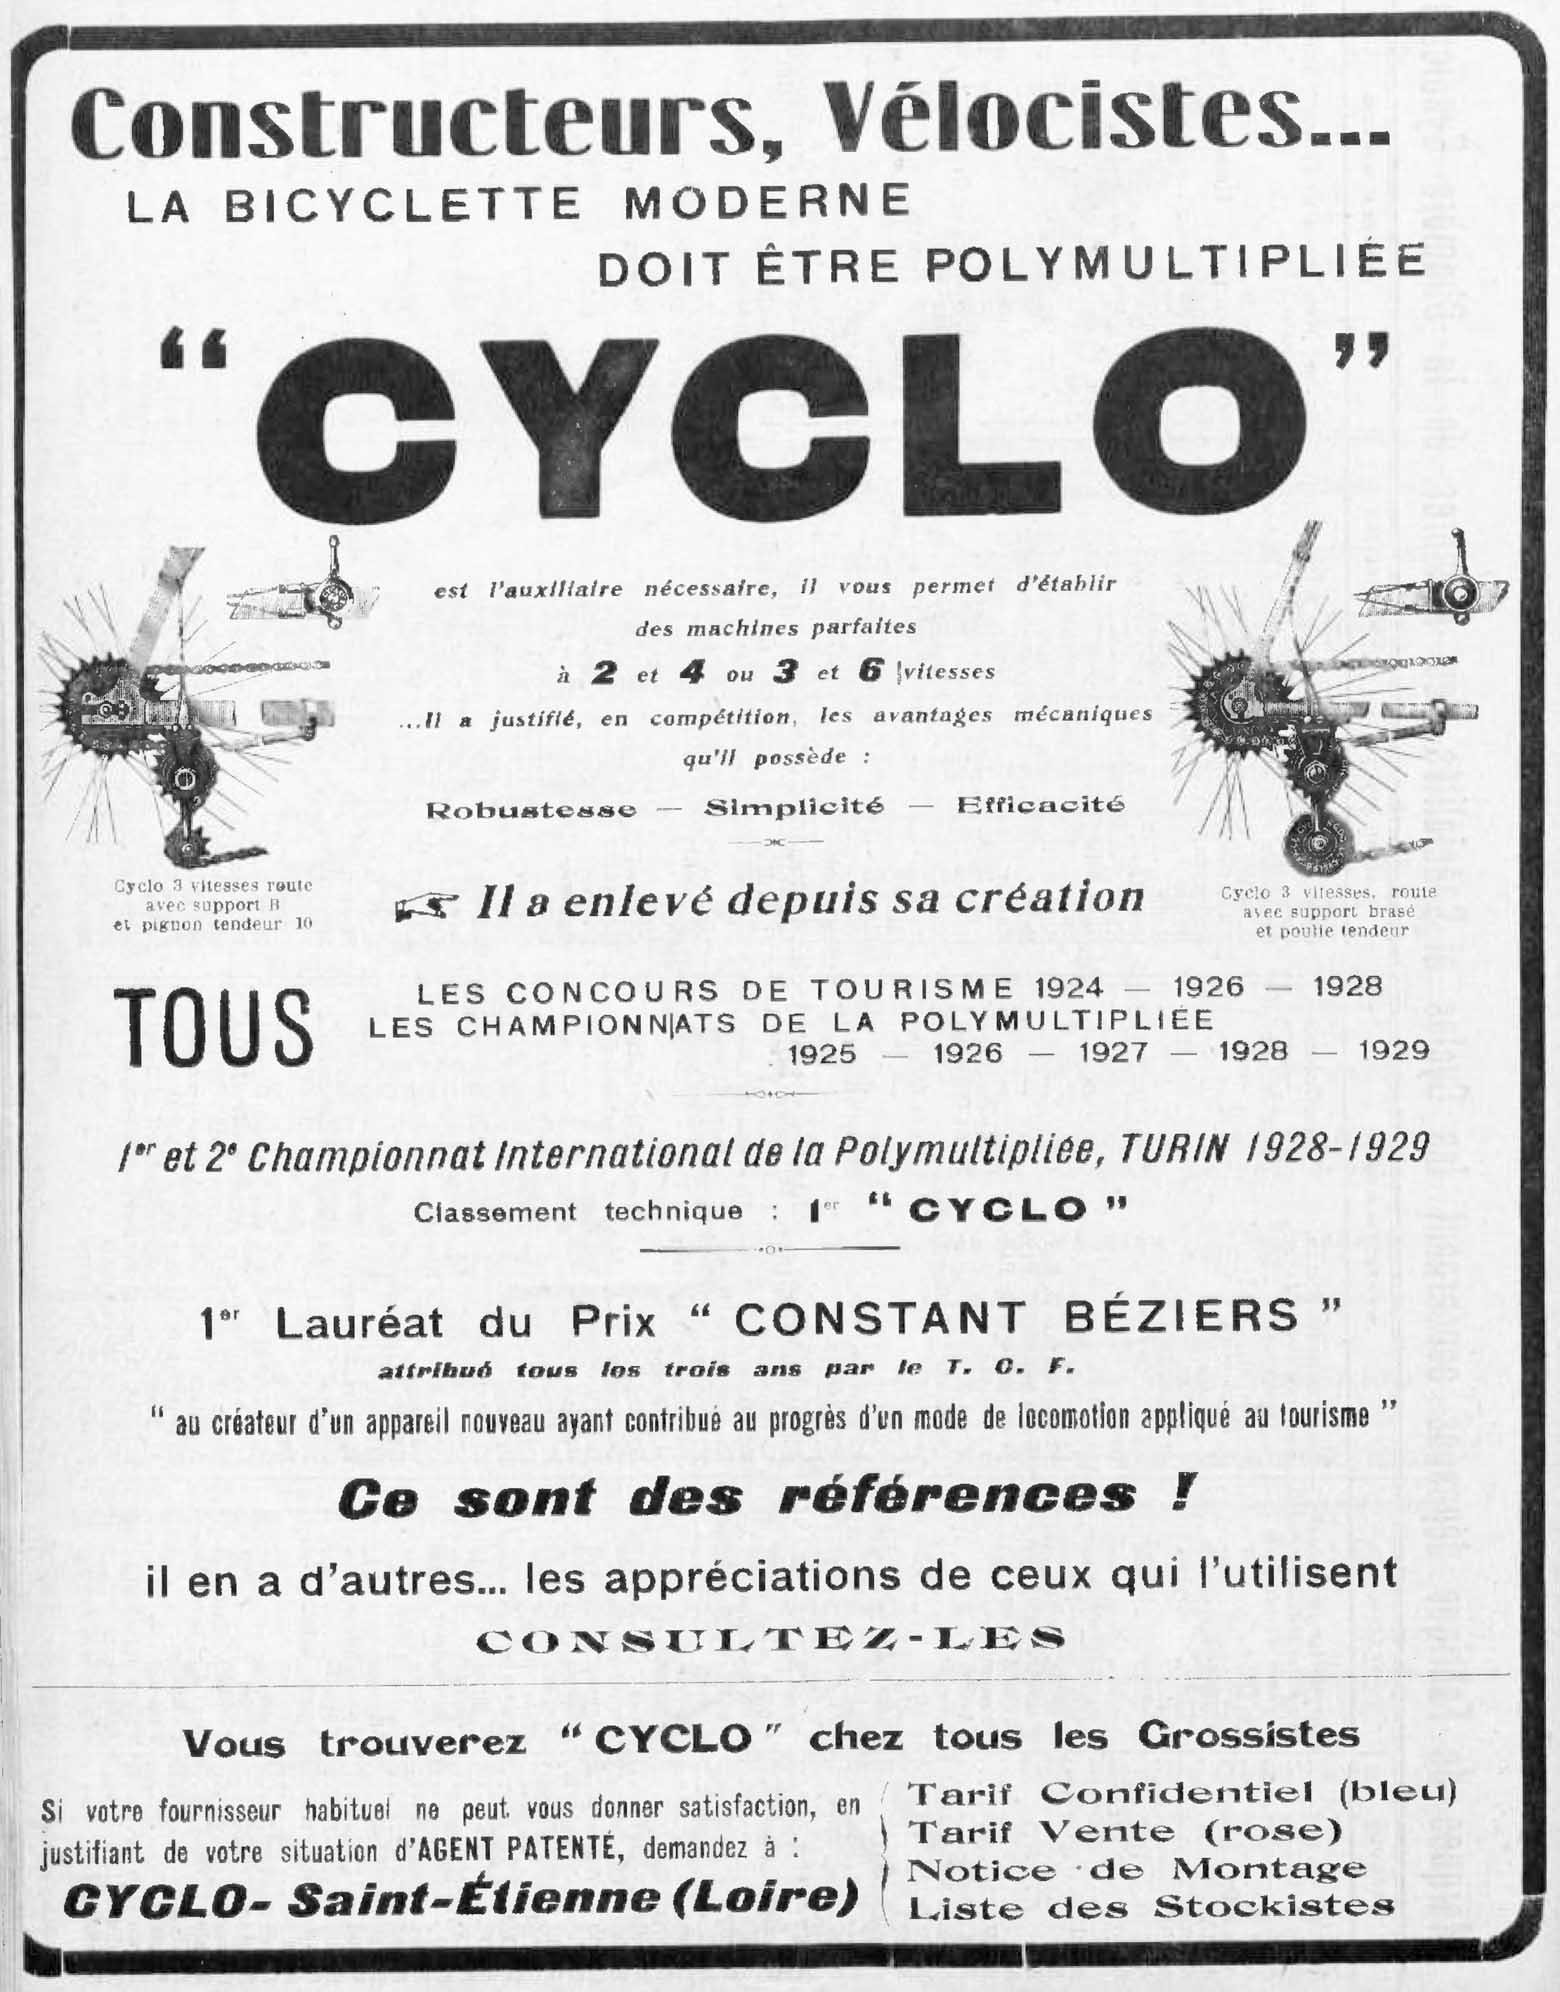 L'Industrie des Cycles et Automobiles March 1930 - Cyclo advert main image